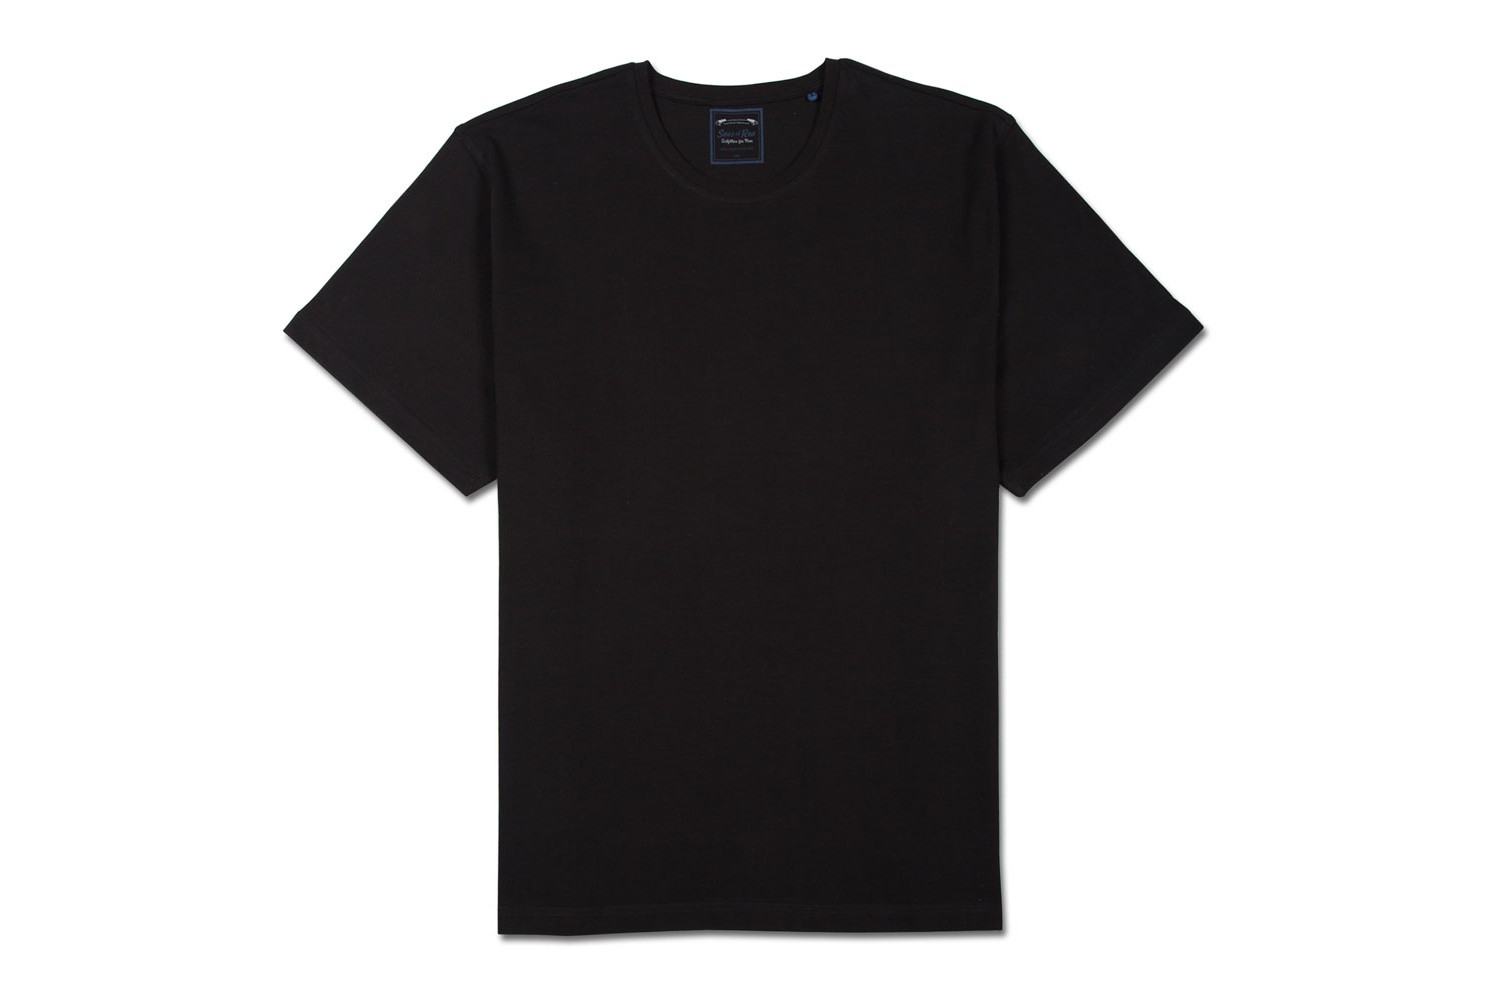 Black T Shirt Template - ClipArt Best